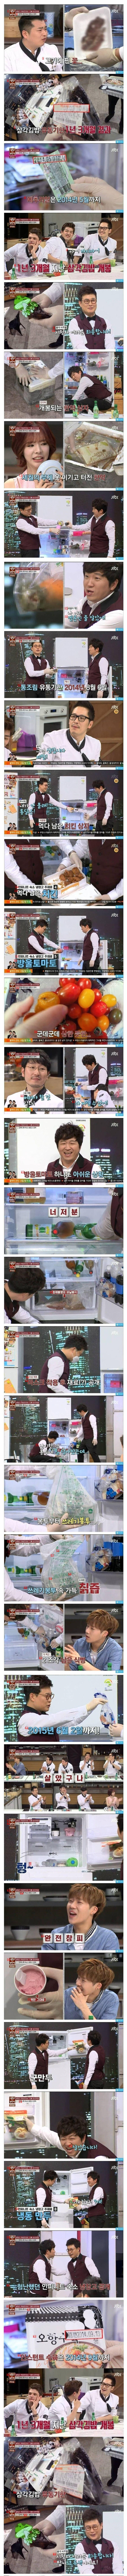 냉부 아이돌 숙소 냉장고 리얼버전.jpg